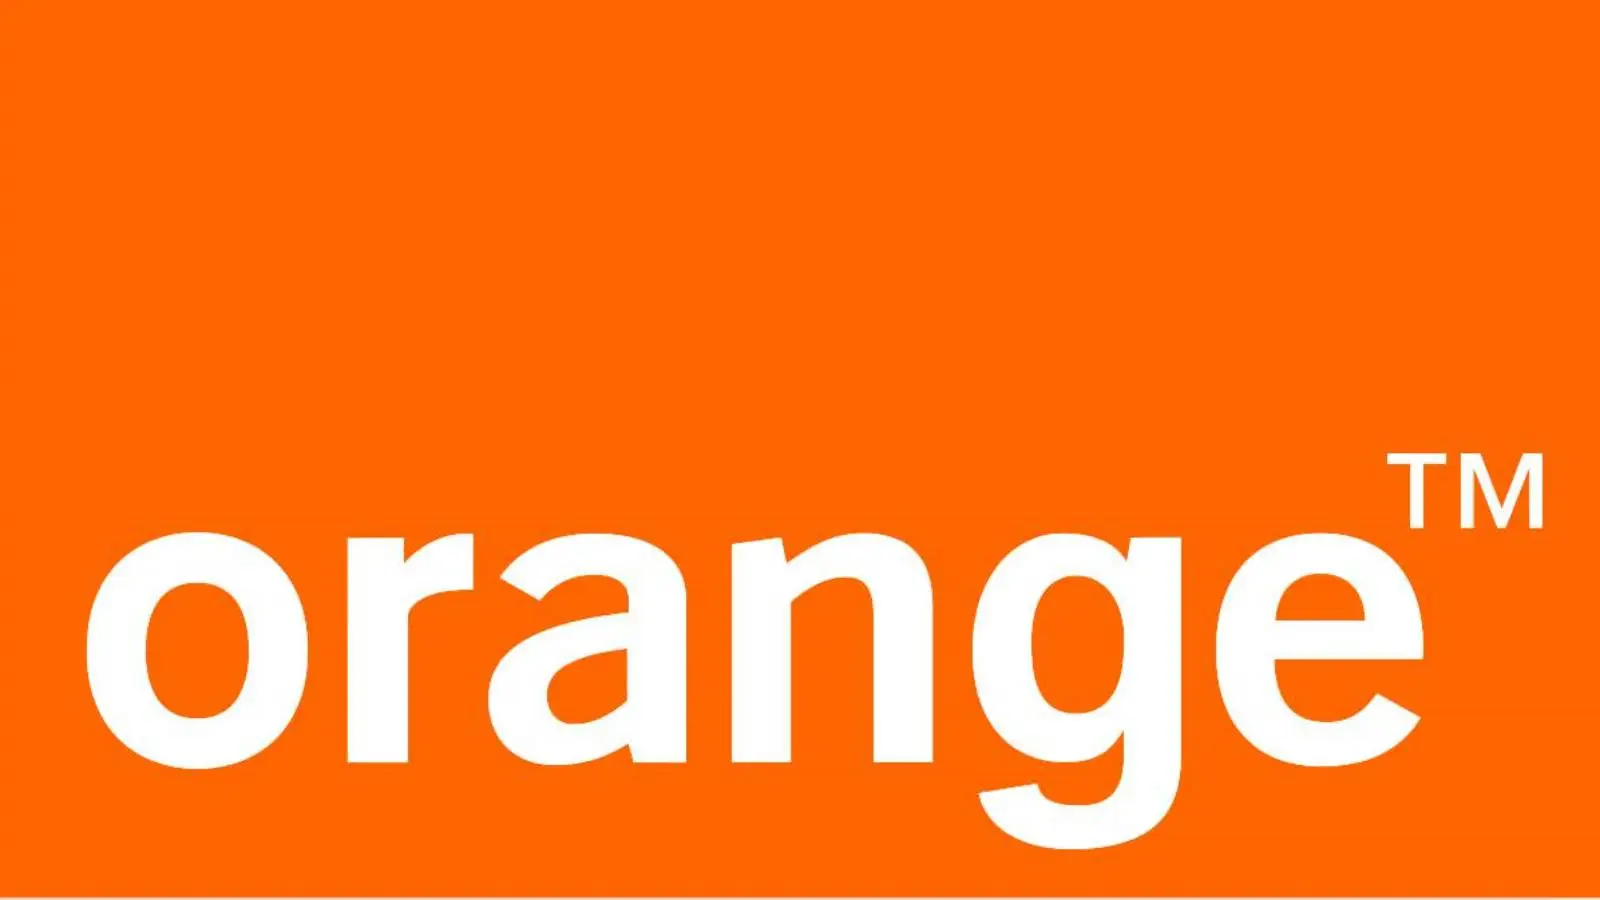 Orange Decizia IMPORTANTA Anuntata Oficial MILIOANELOR Clienti Romania